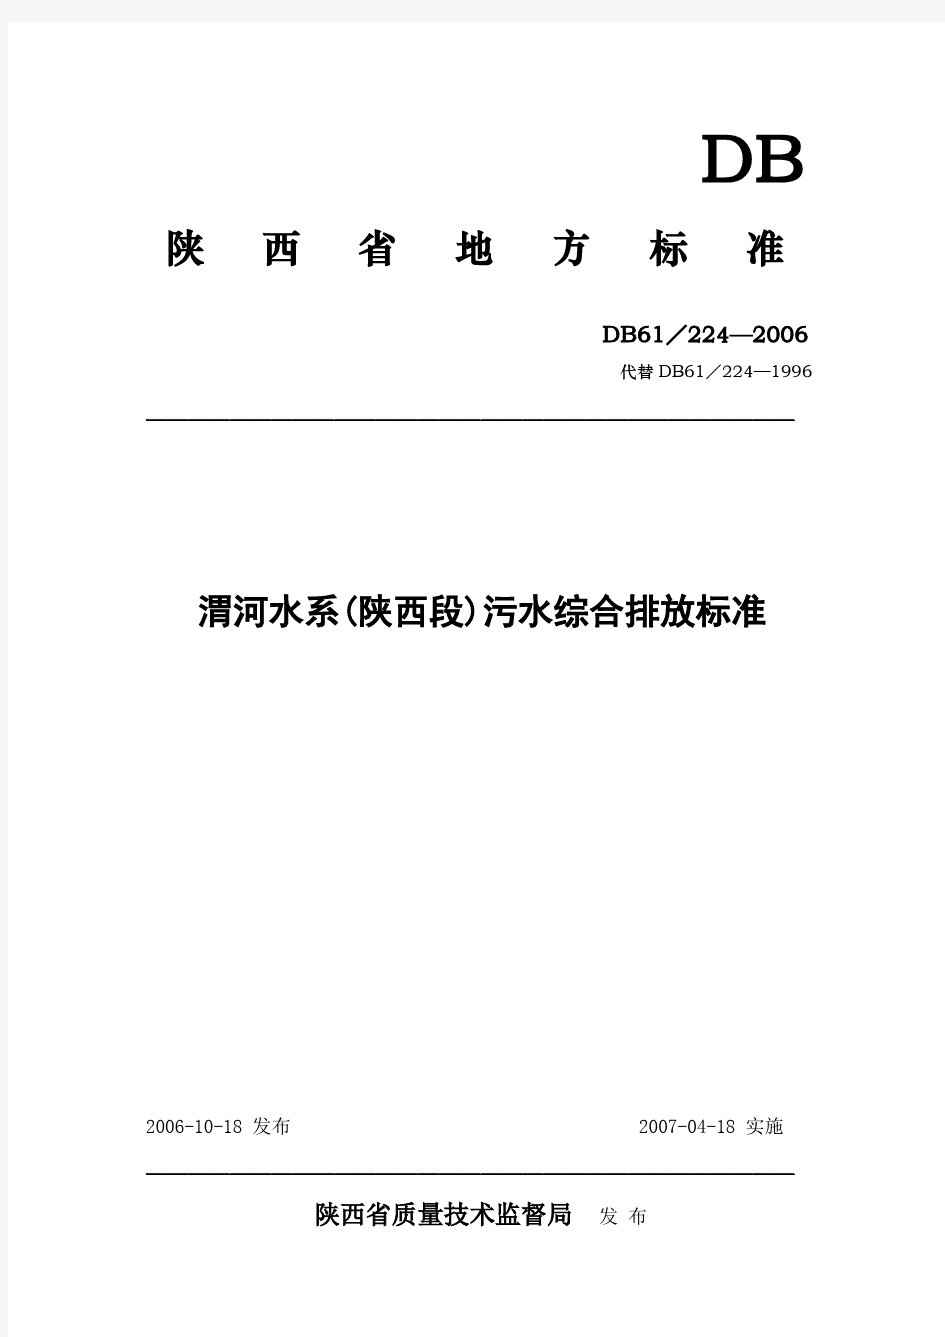 渭河水系(陕西段)污水综合排放标准